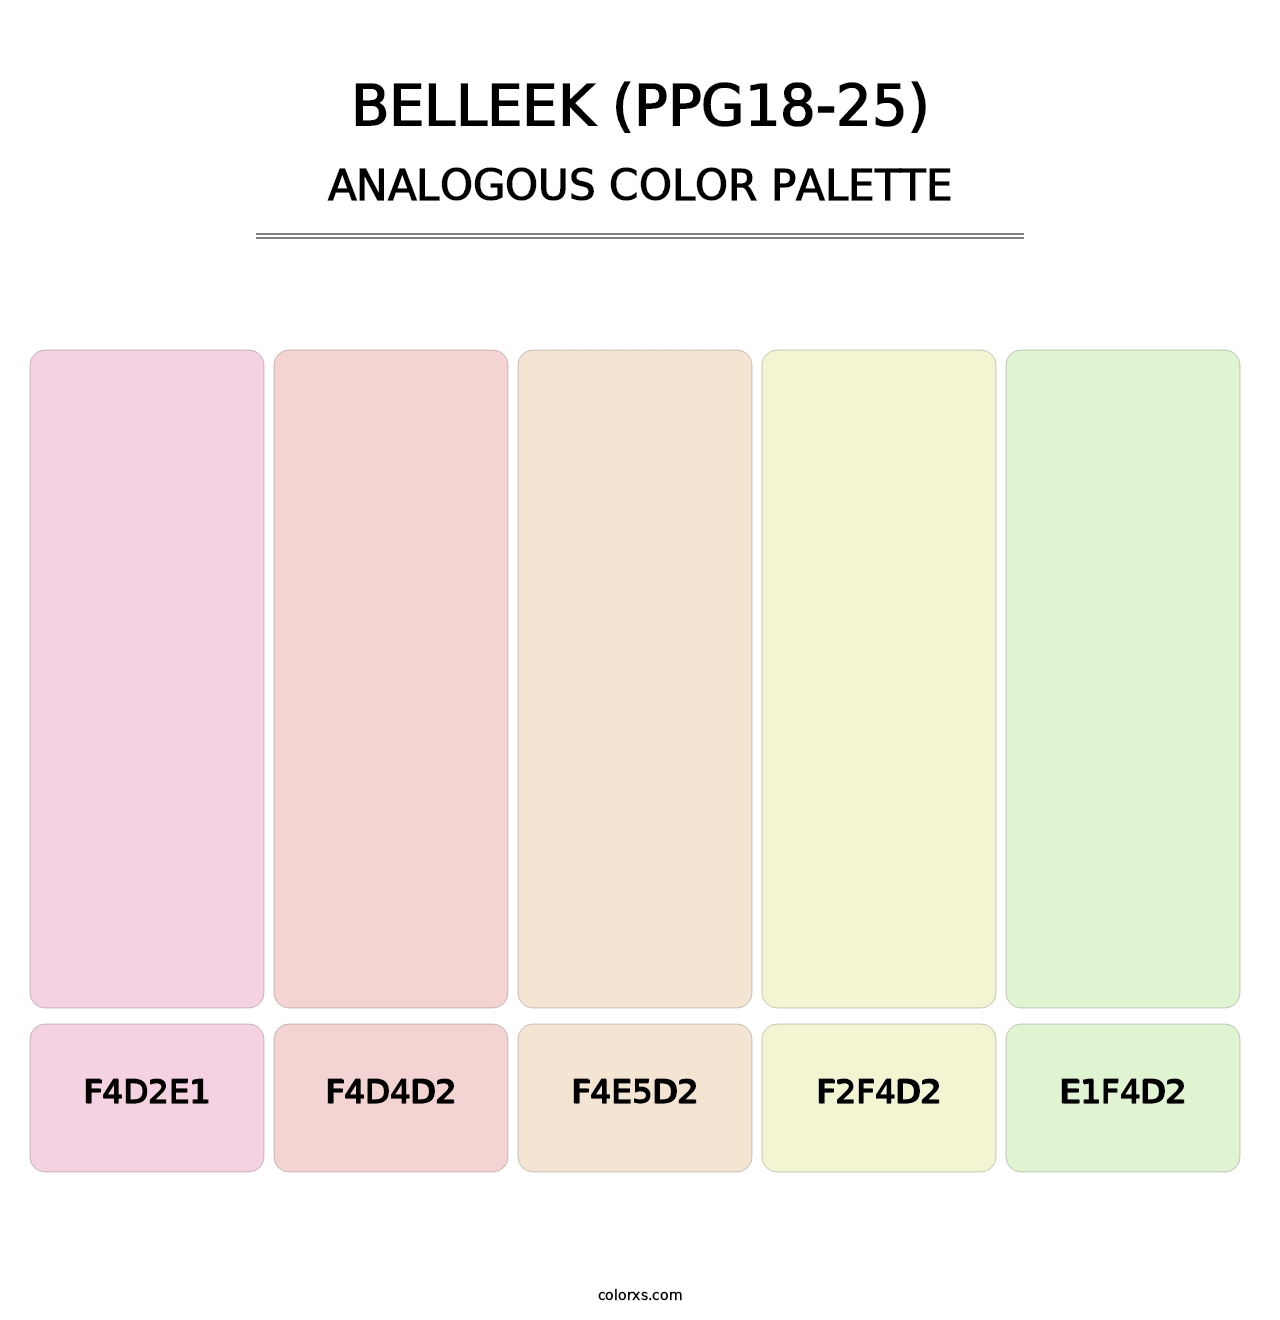 Belleek (PPG18-25) - Analogous Color Palette